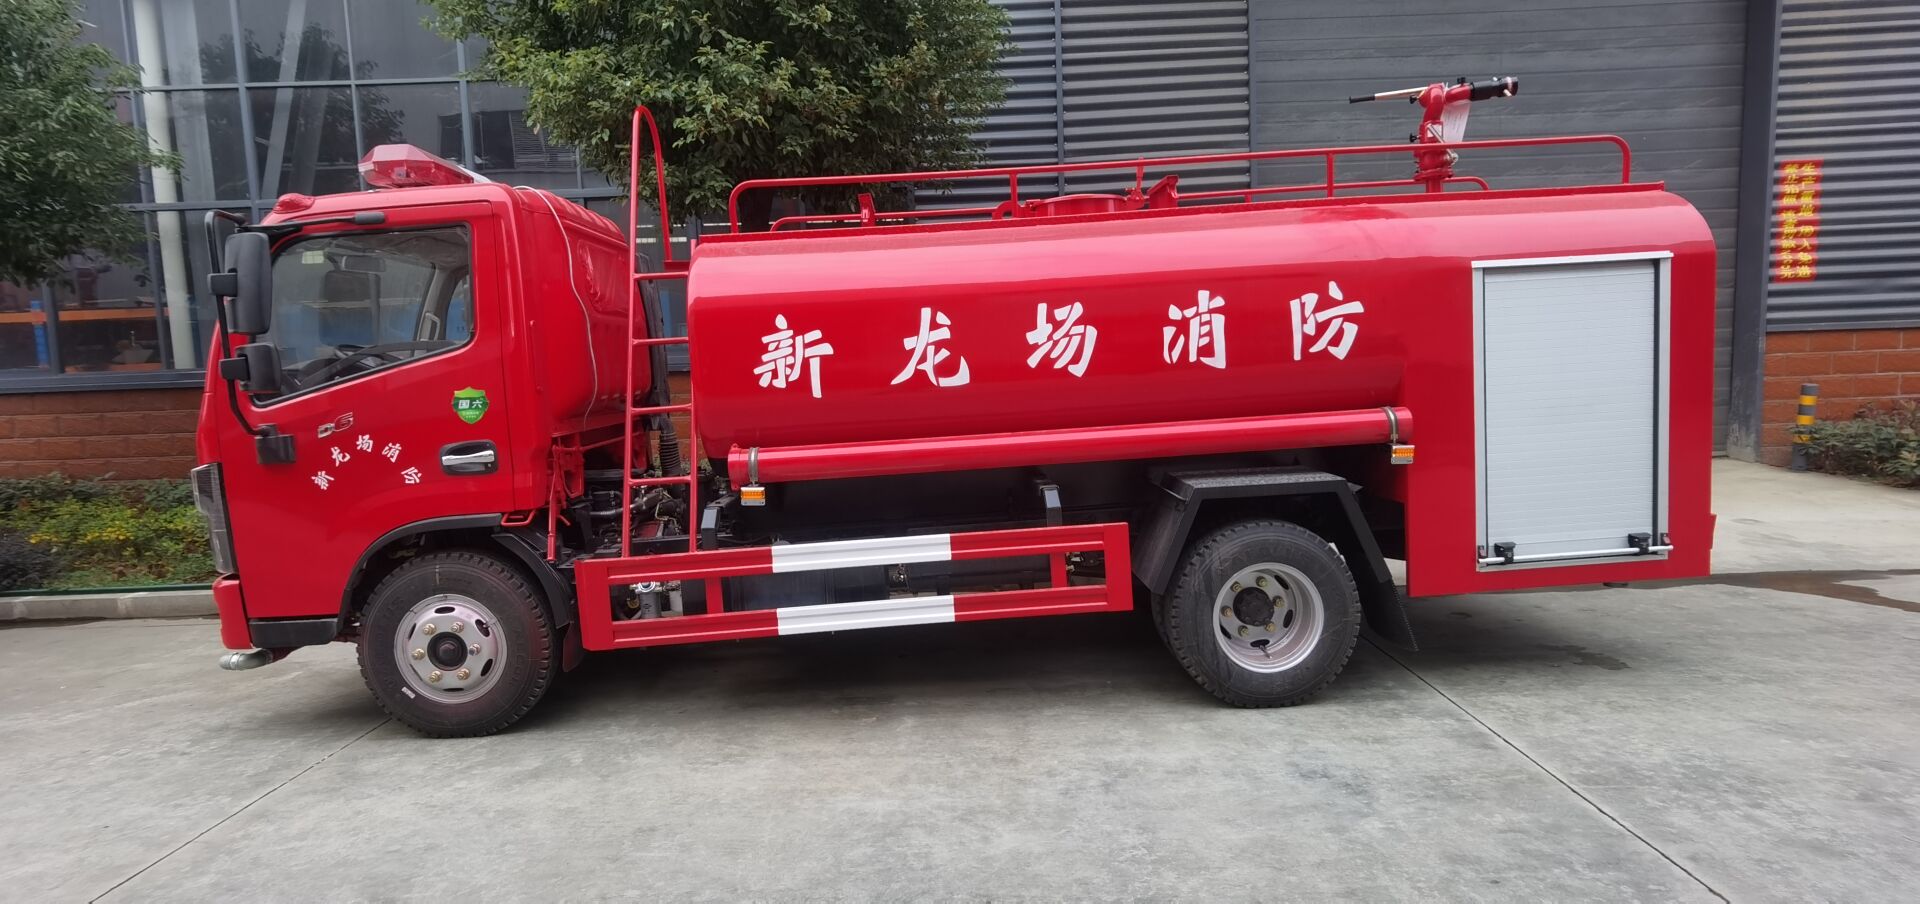 社区消防车东风5吨水罐消防车生产商